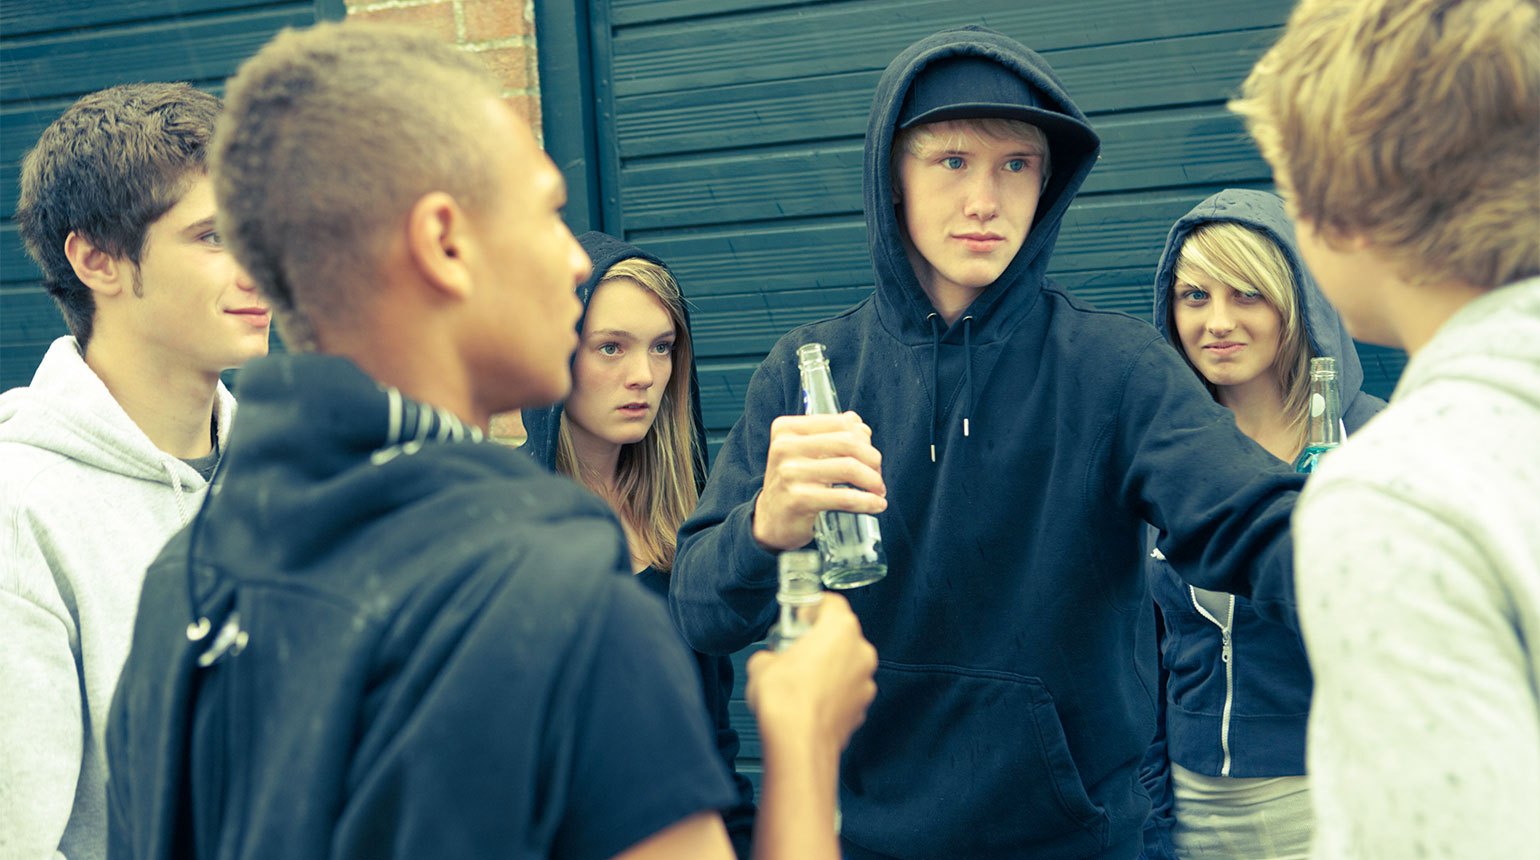 Ein Jugendlicher wird von einer Gruppe Gleichaltriger bedroht.